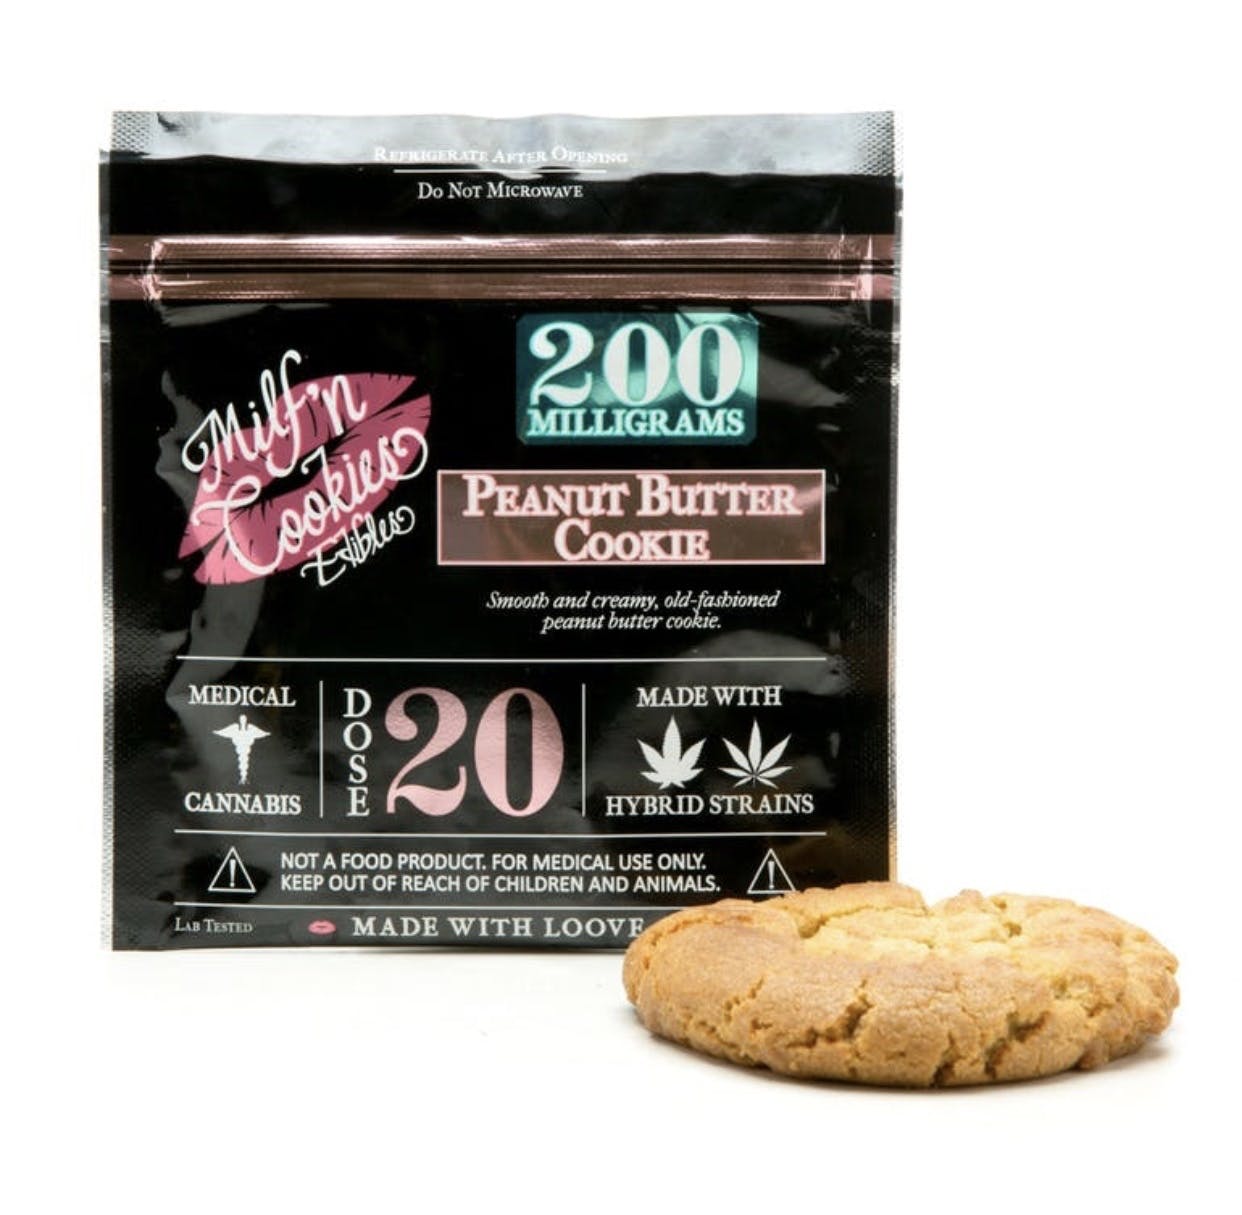 marijuana-dispensaries-breaking-bud-20-cap-in-los-angeles-milf-n-cookies-peanut-butter-cookie-200mg